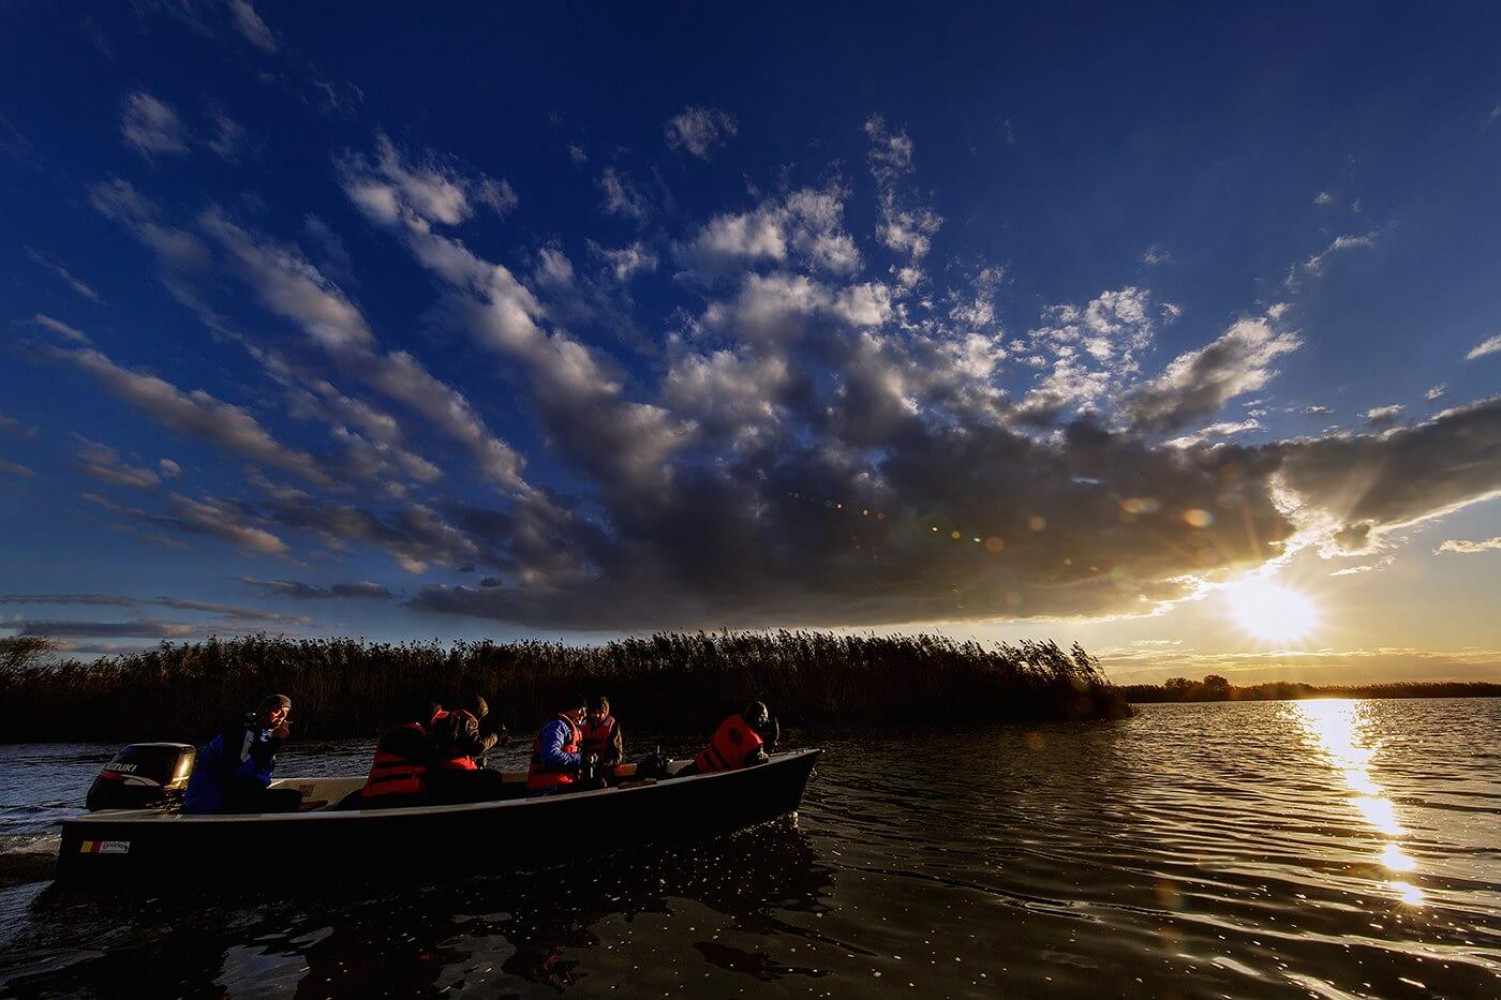 Delta Dunării - fotografi în barcă